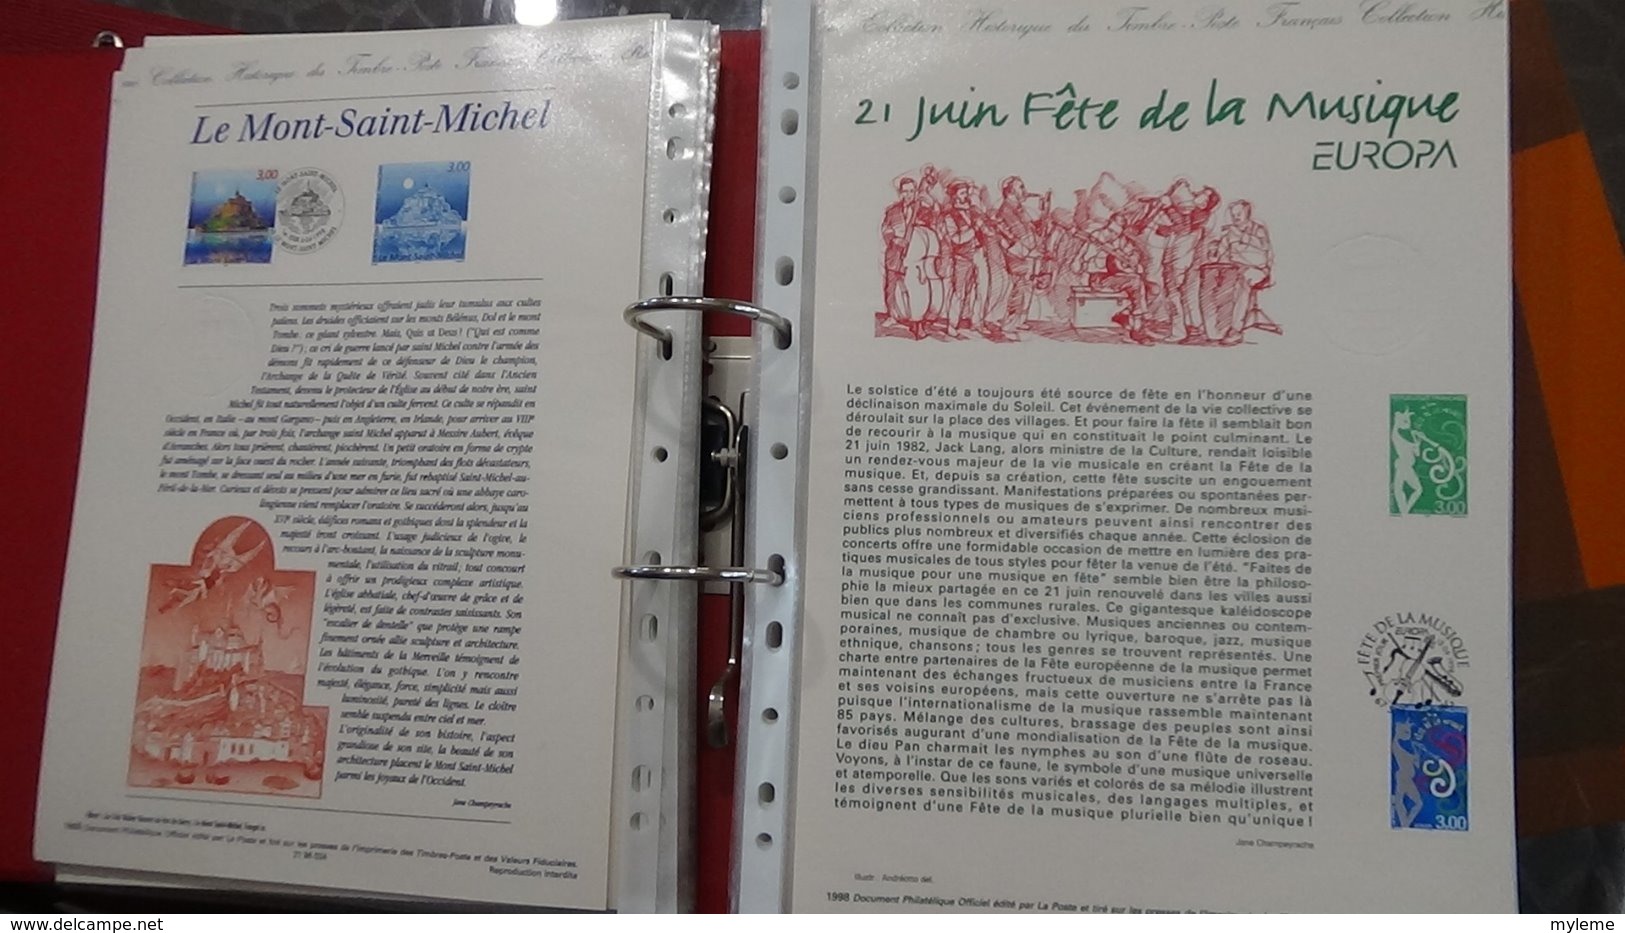 48 Documents philatéliques an 1998 complète (côte 2003 : 570 euros) PORT 8.80 euros COLISSIMO OFFERT (pour la France)